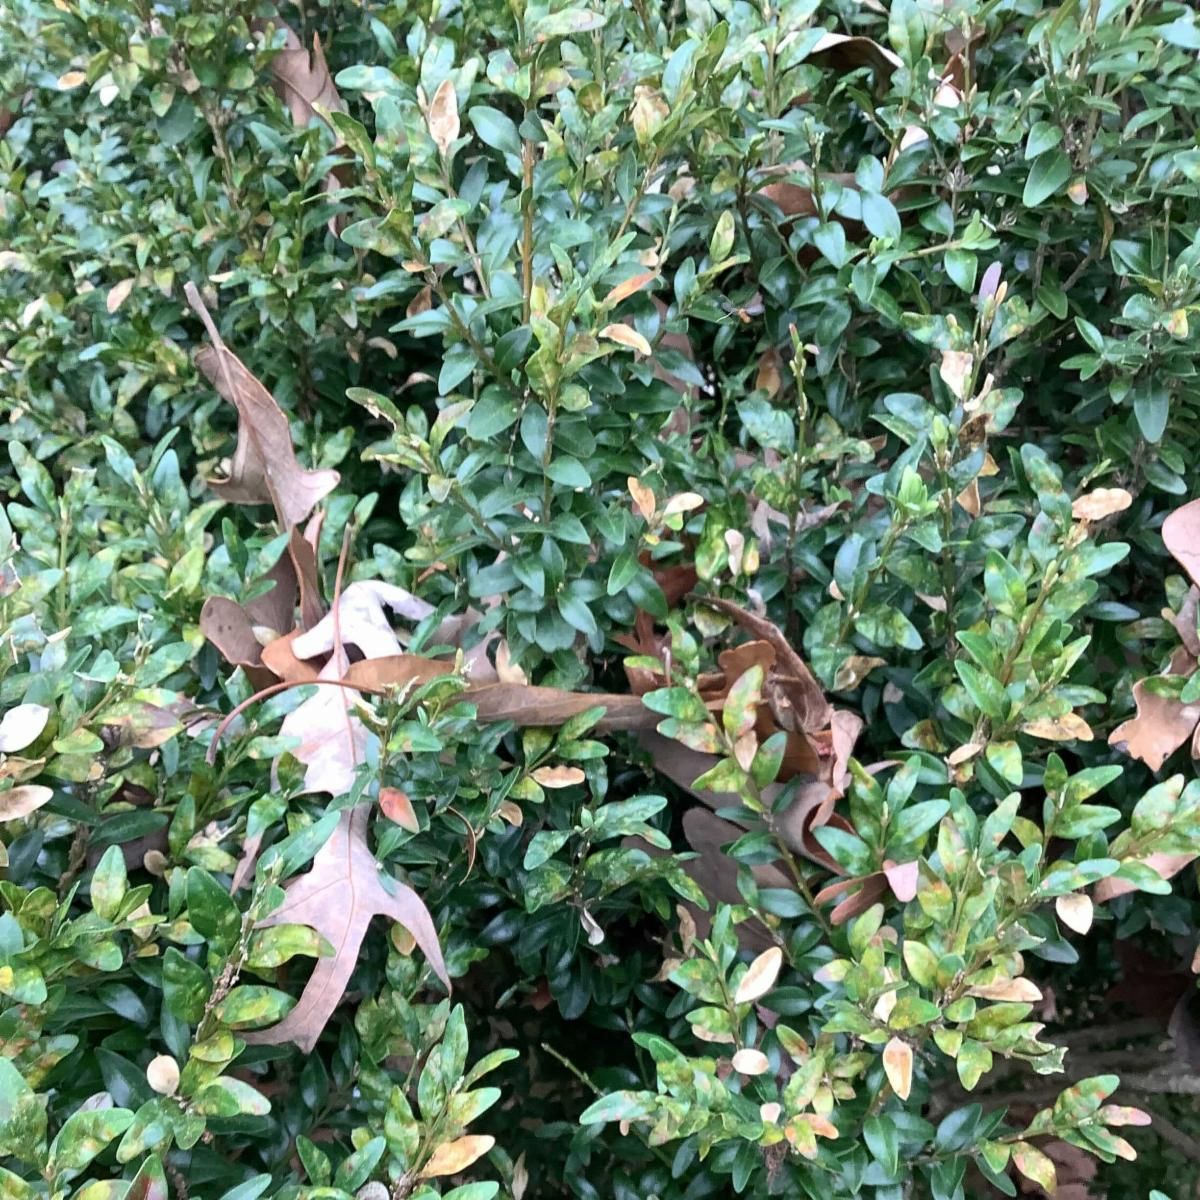 Image new foliage on a Boxwood